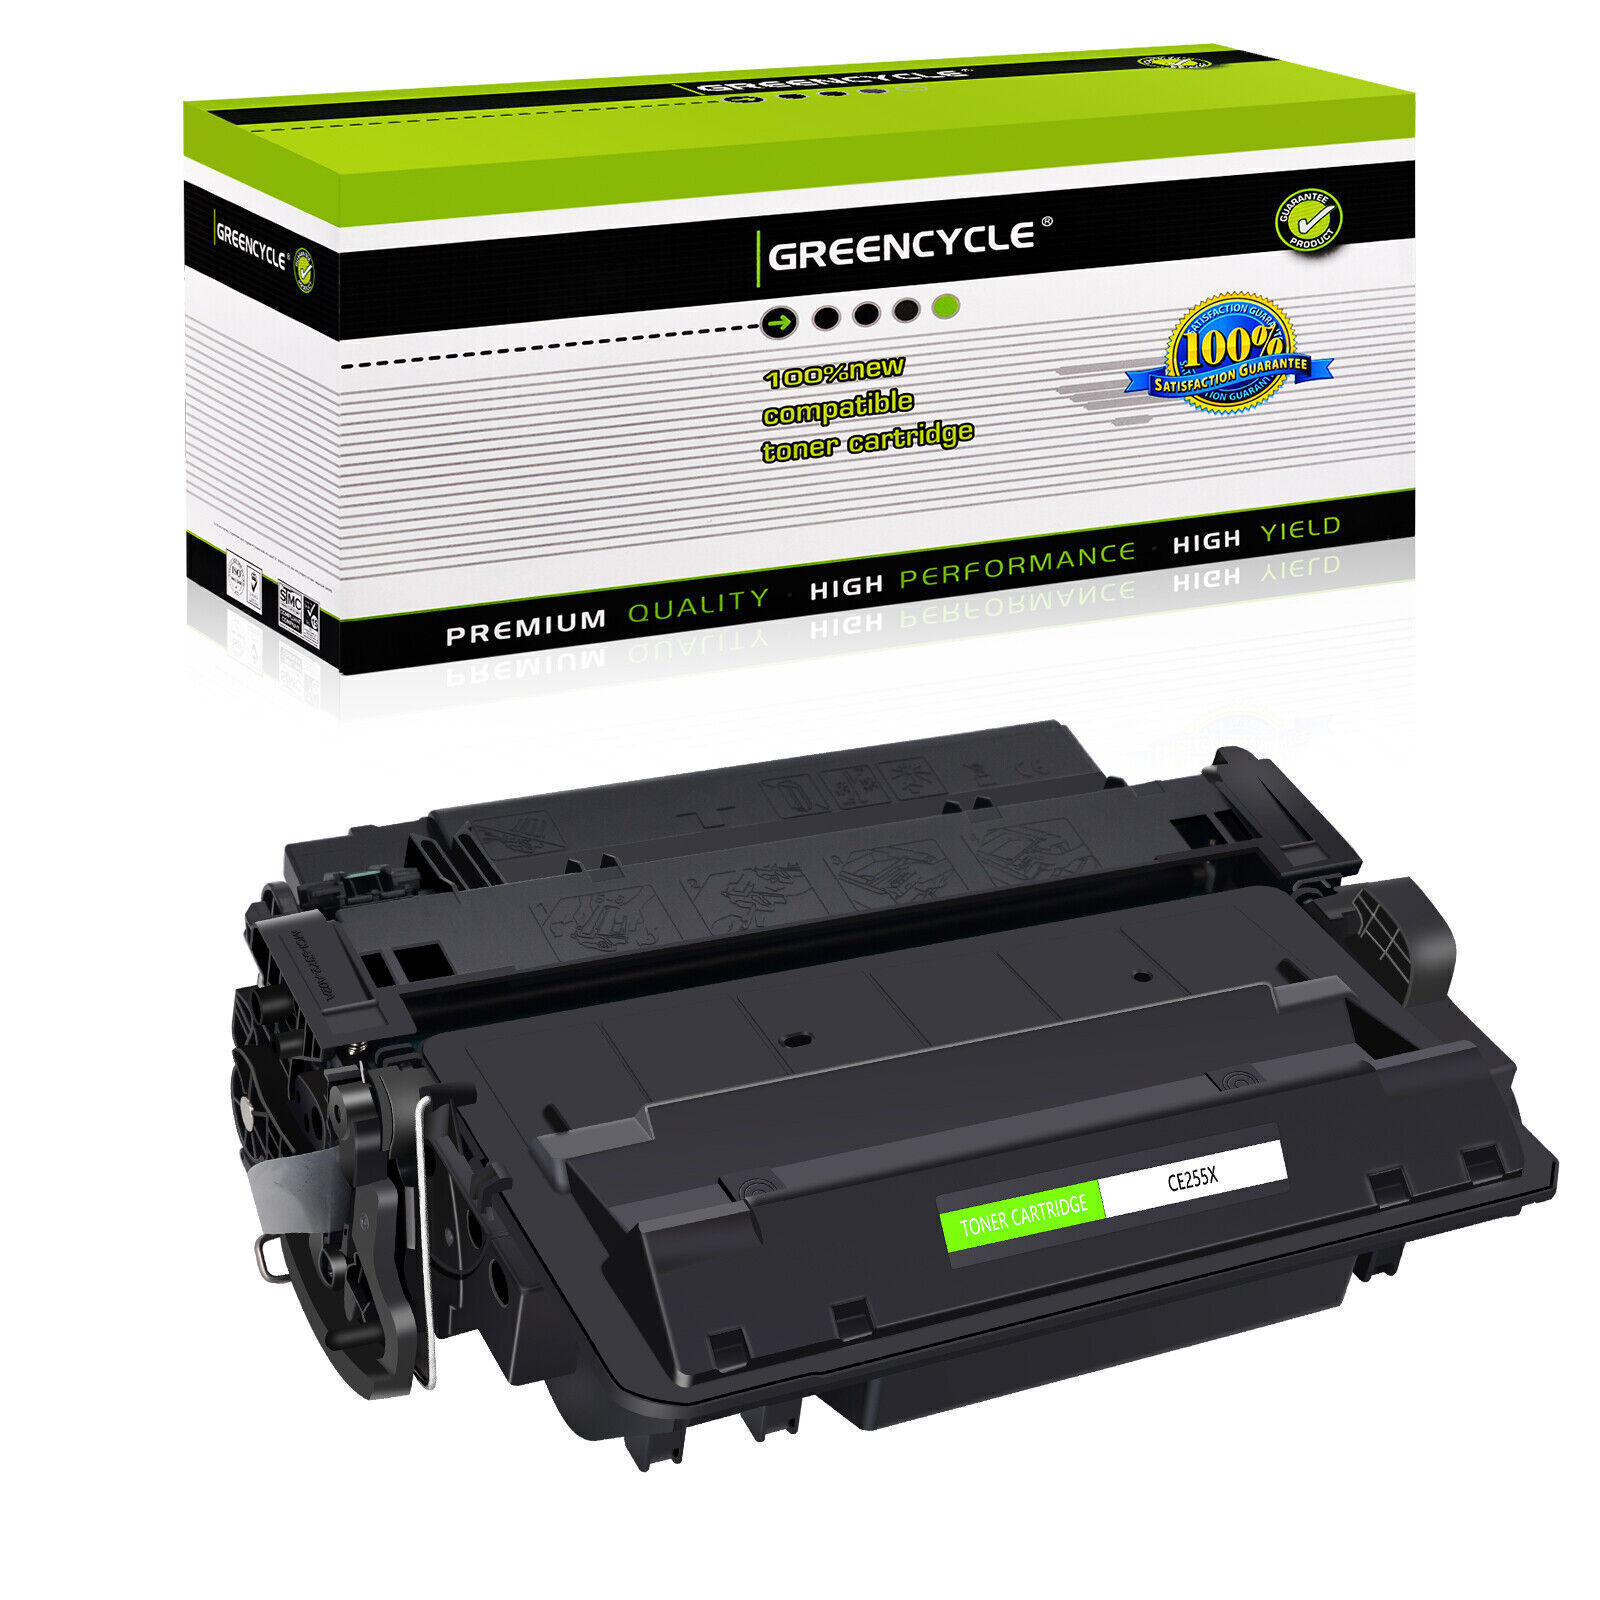 Greencycle 1PK CE255X Toner for HP 55X LaserJet P3010 P3015 P3015x P3015n P3016